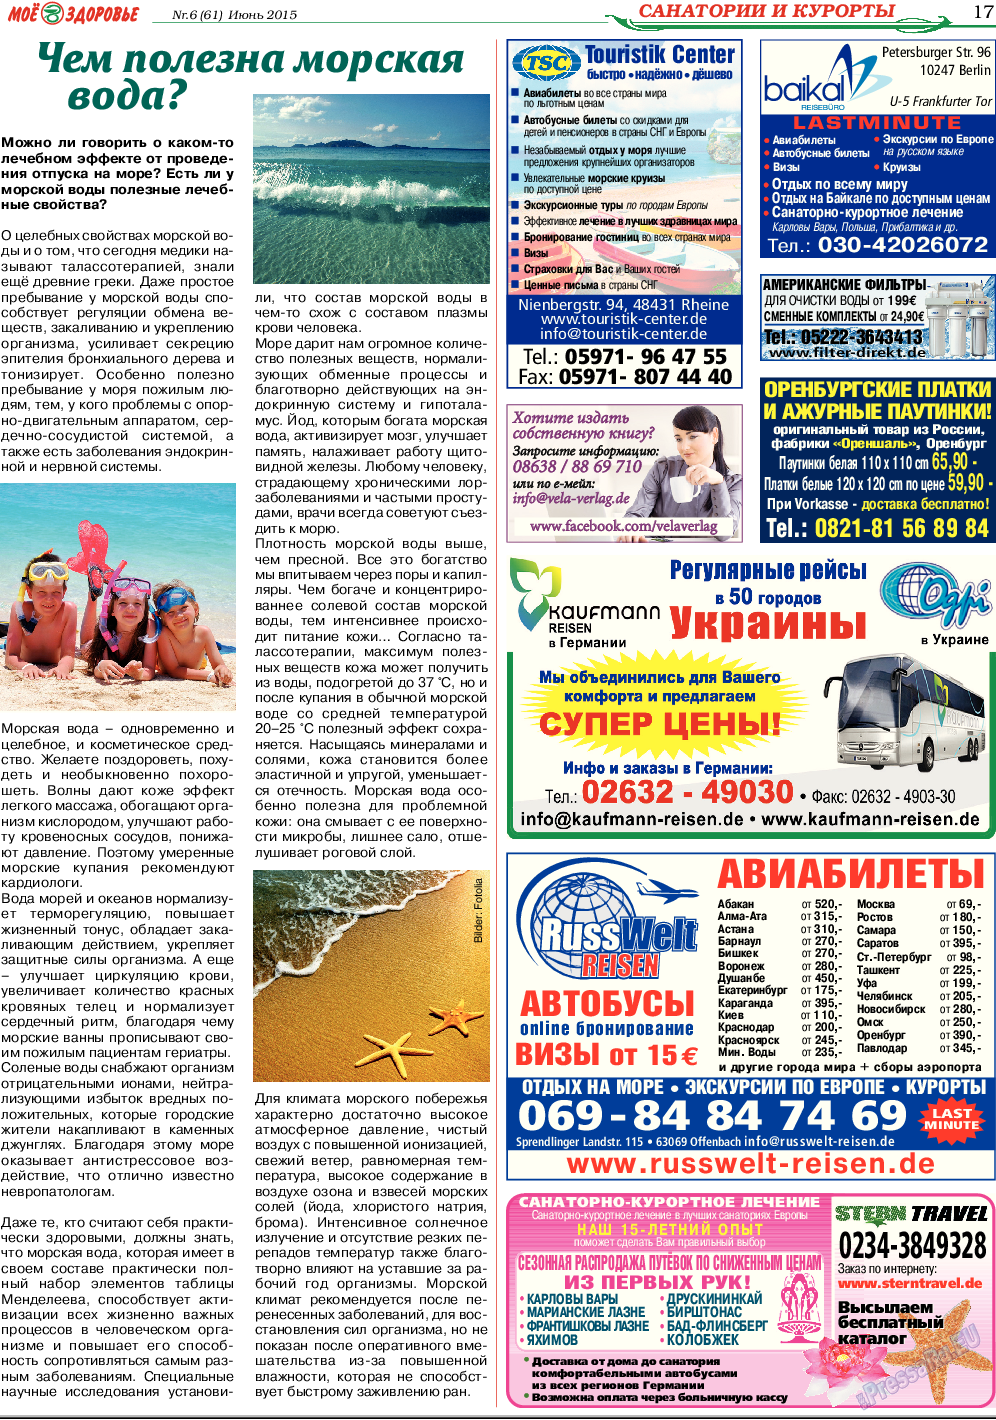 Кругозор, газета. 2015 №6 стр.17